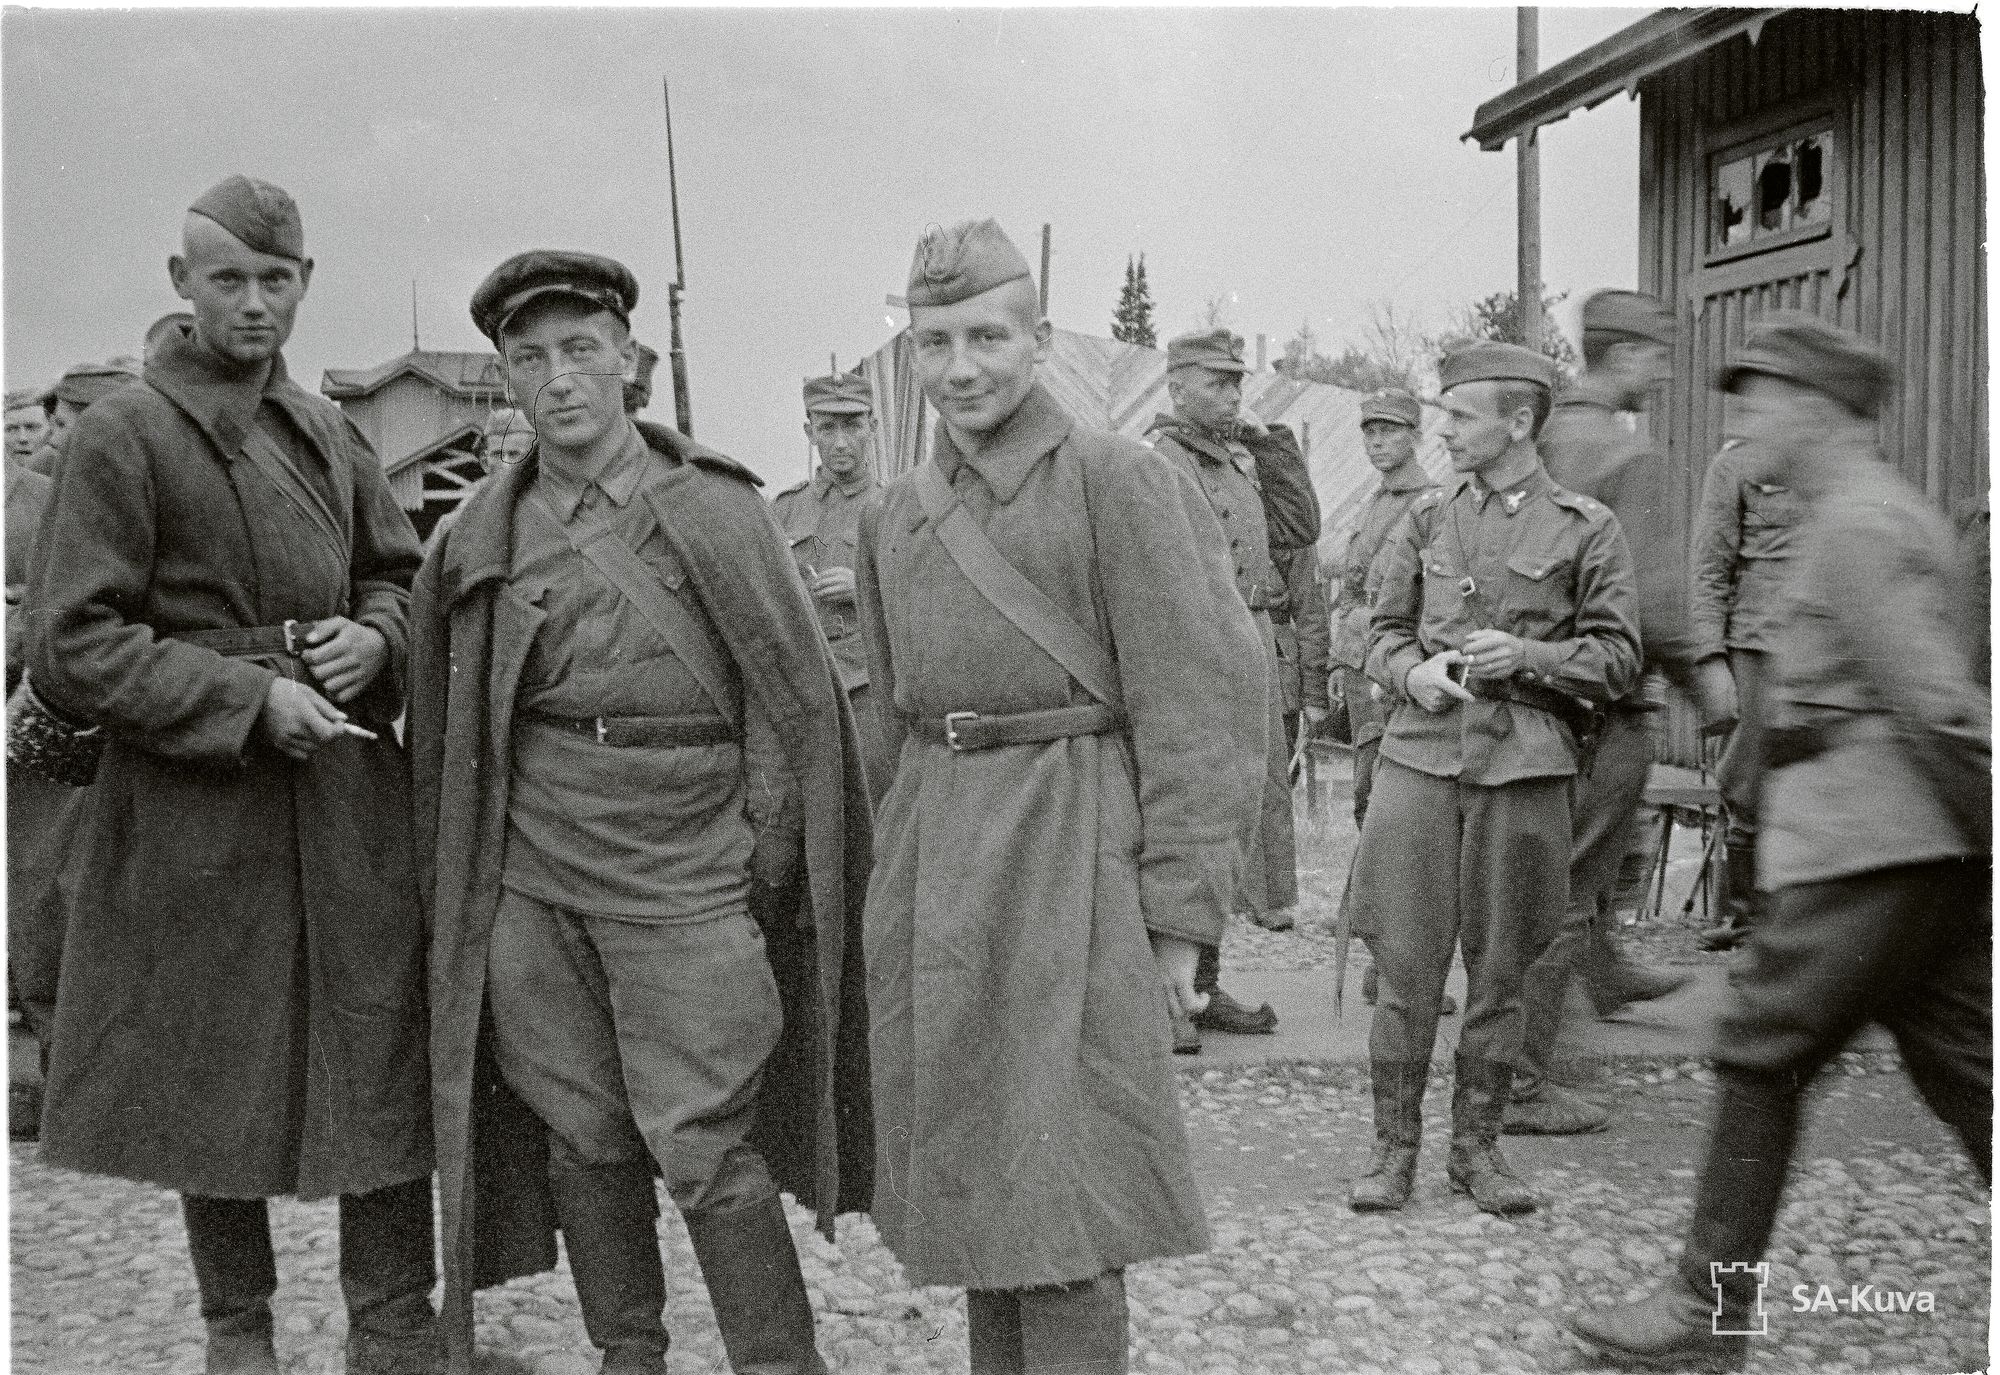 Kolme puolalaista sotavankia, lääkäri, matemaatikko ja luonnontieteilijä Jatkosodan aikana 1941 Ojajärven asemalla © SA-kuva